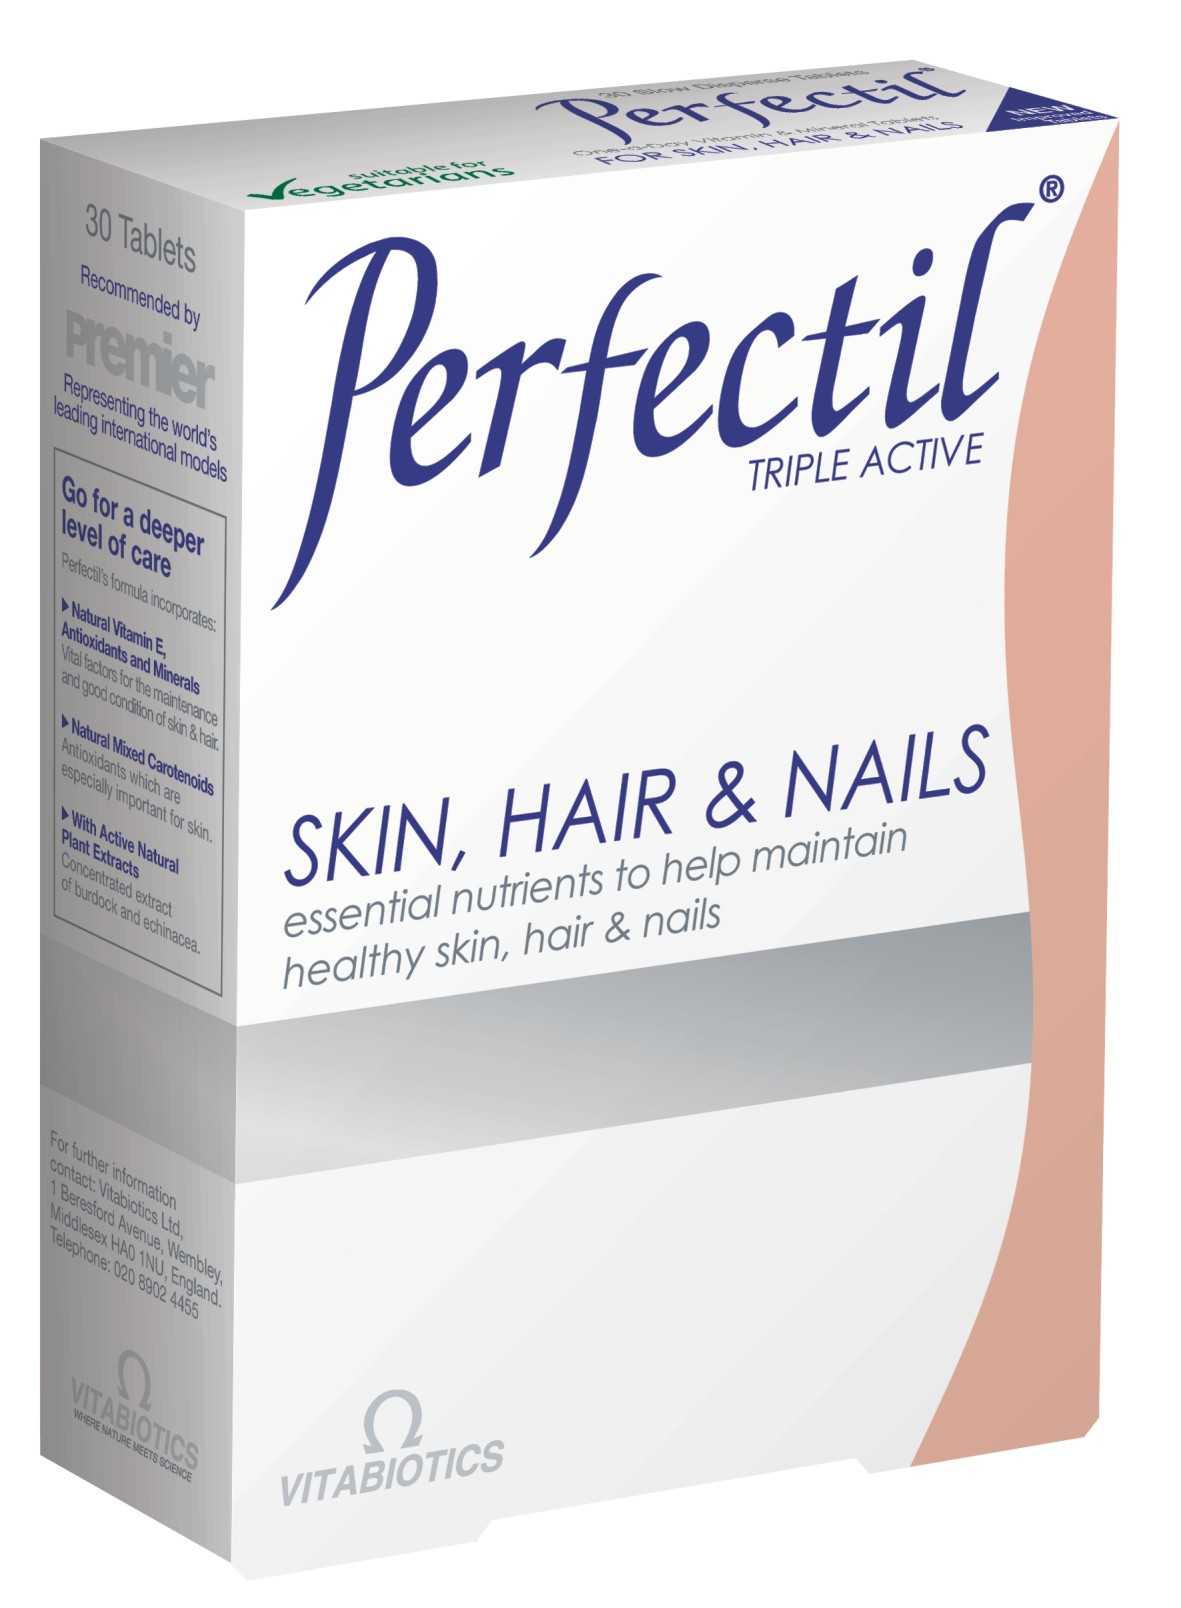 Витамин для ногтей perfectil. Перфектил витамины для волос. Перфектил для кожи капсулы. Витамины для женщин Perfectil. Перфектил Витабиотикс.